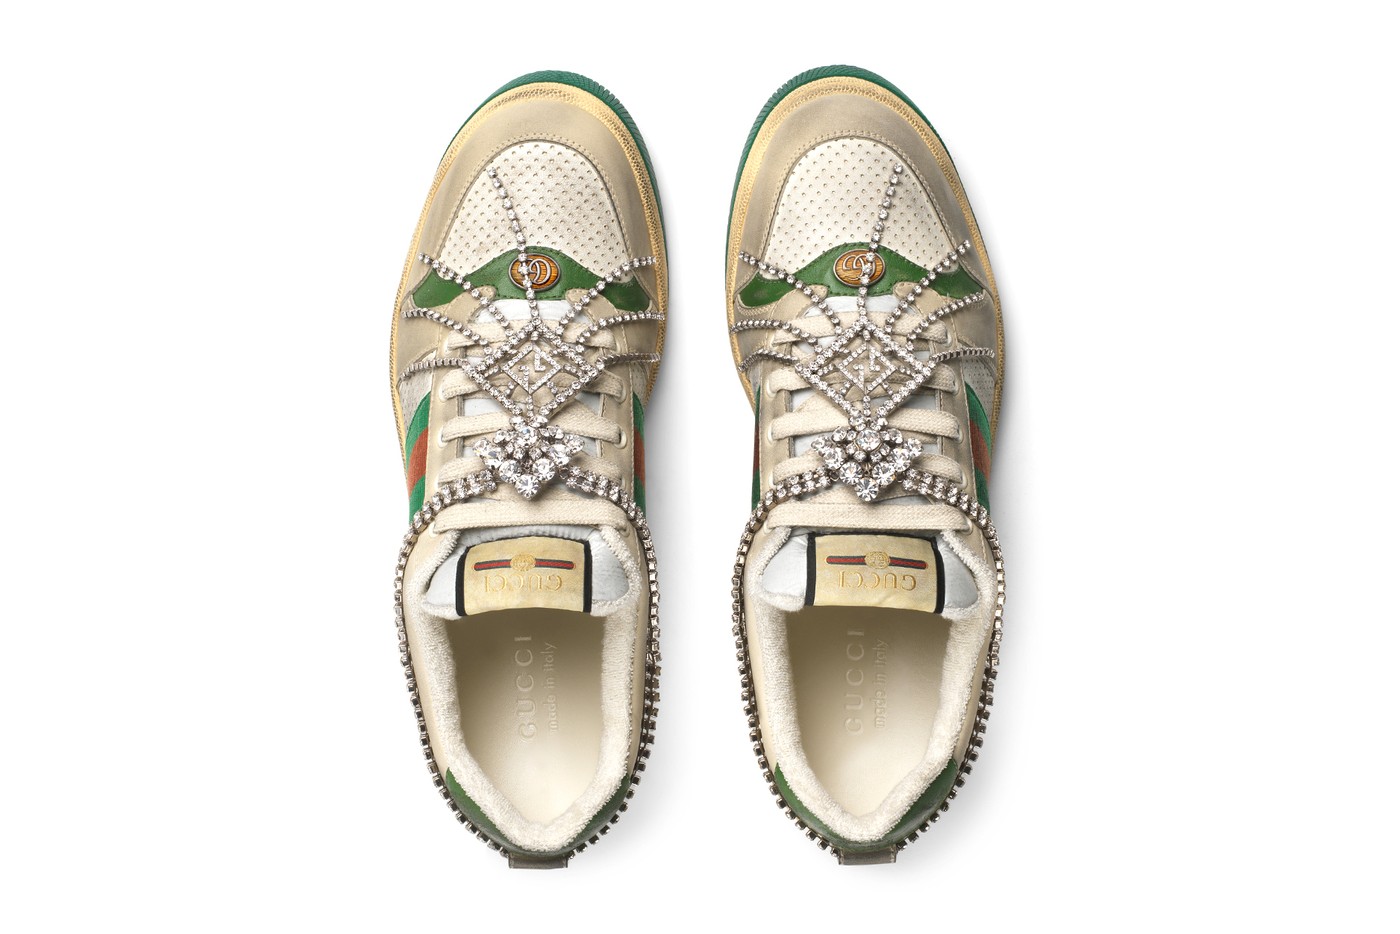 Gucci tung ra phiên bản sneakers đính pha lê với giá gần 40 triệu VND